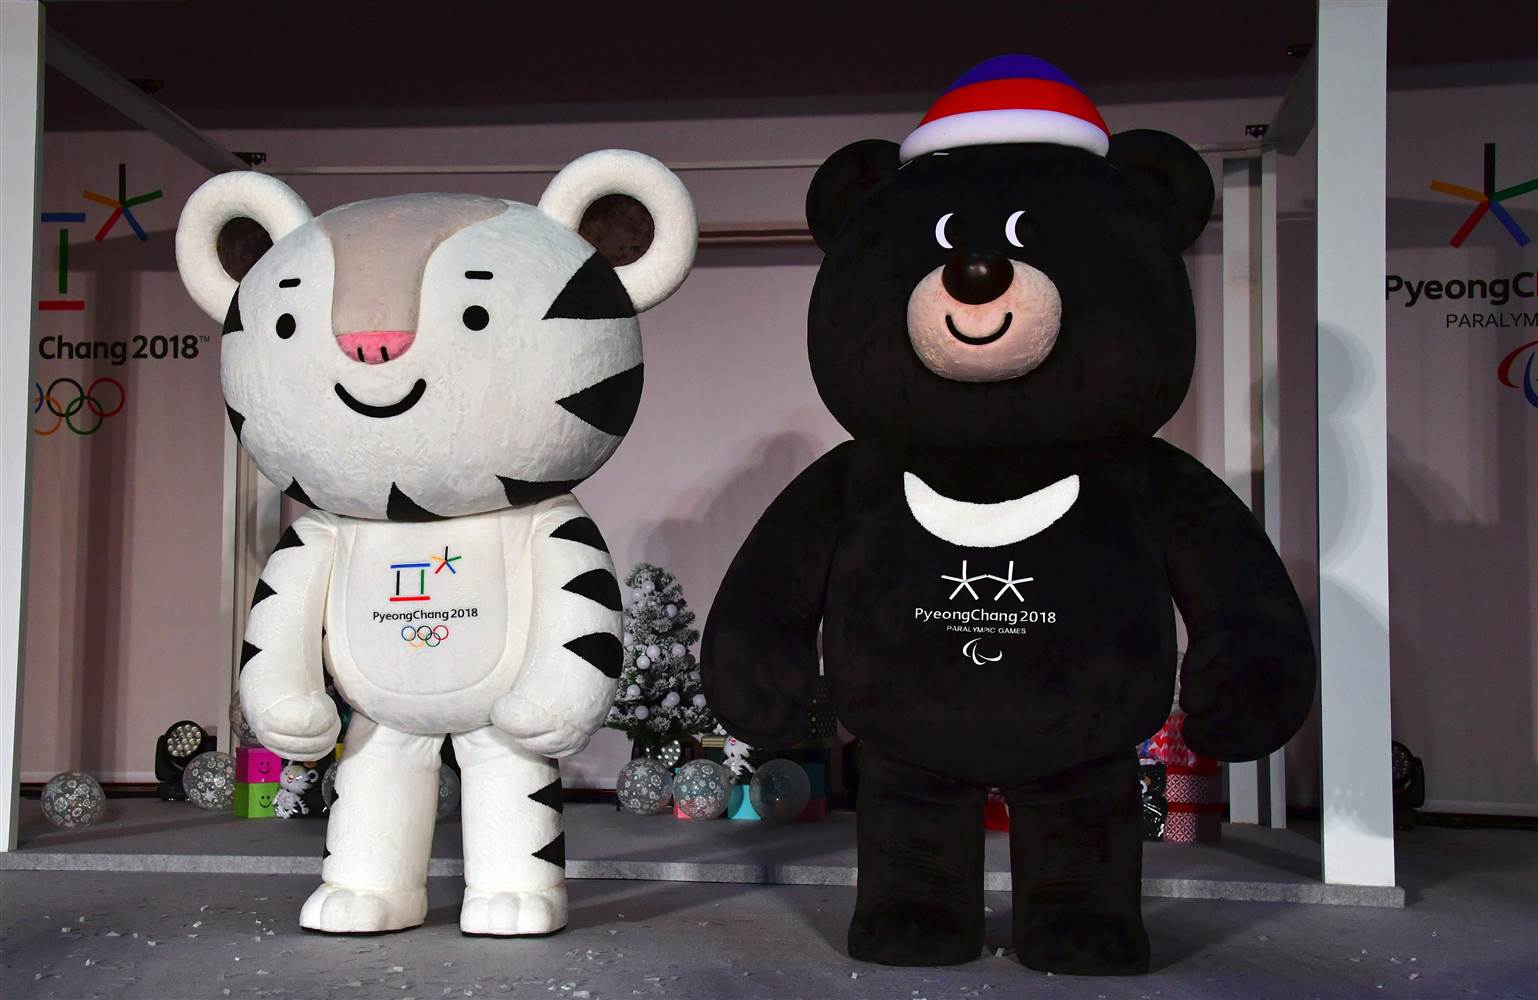 Εκτόνωσης της έντασης στην Κορεατική Χερσόνησο με την συμμετοχή της Πιονγιάνγκ στους Χειμερινούς Ολυμπιακούς Αγώνες